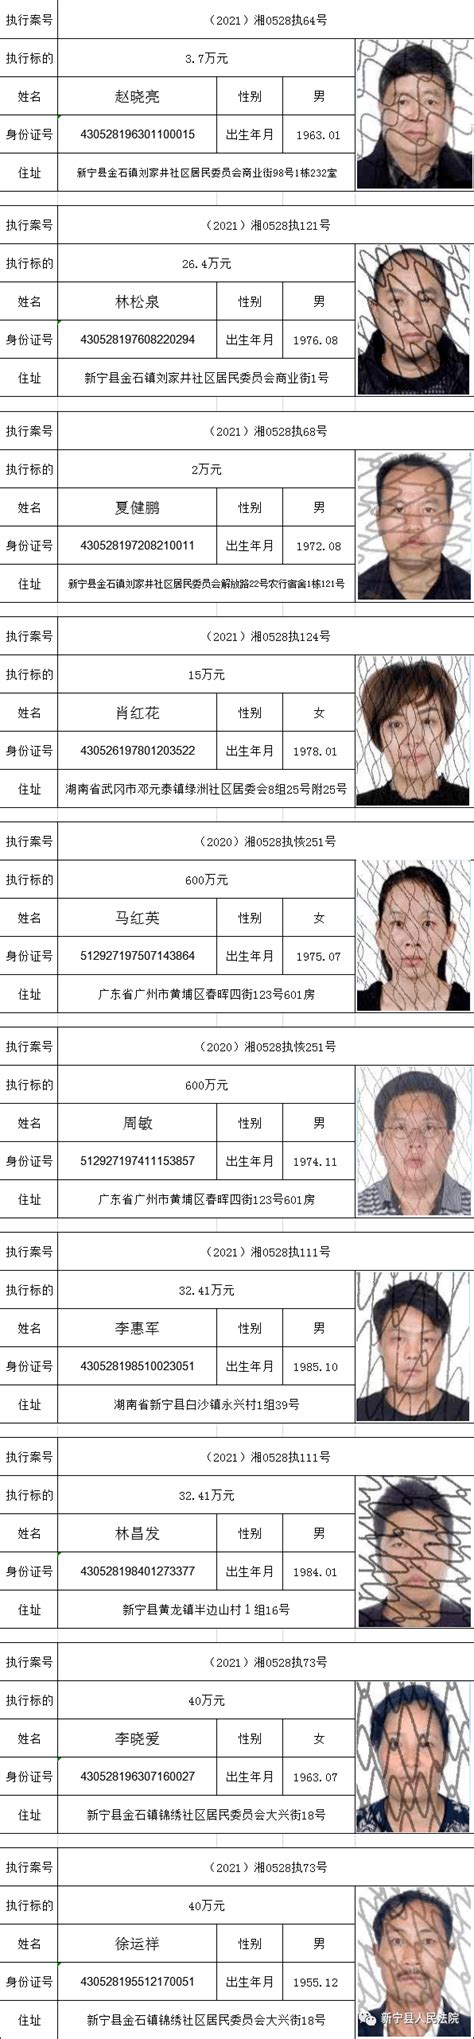 我院发布2018年第三批失信被执行人名单-舒城县人民法院